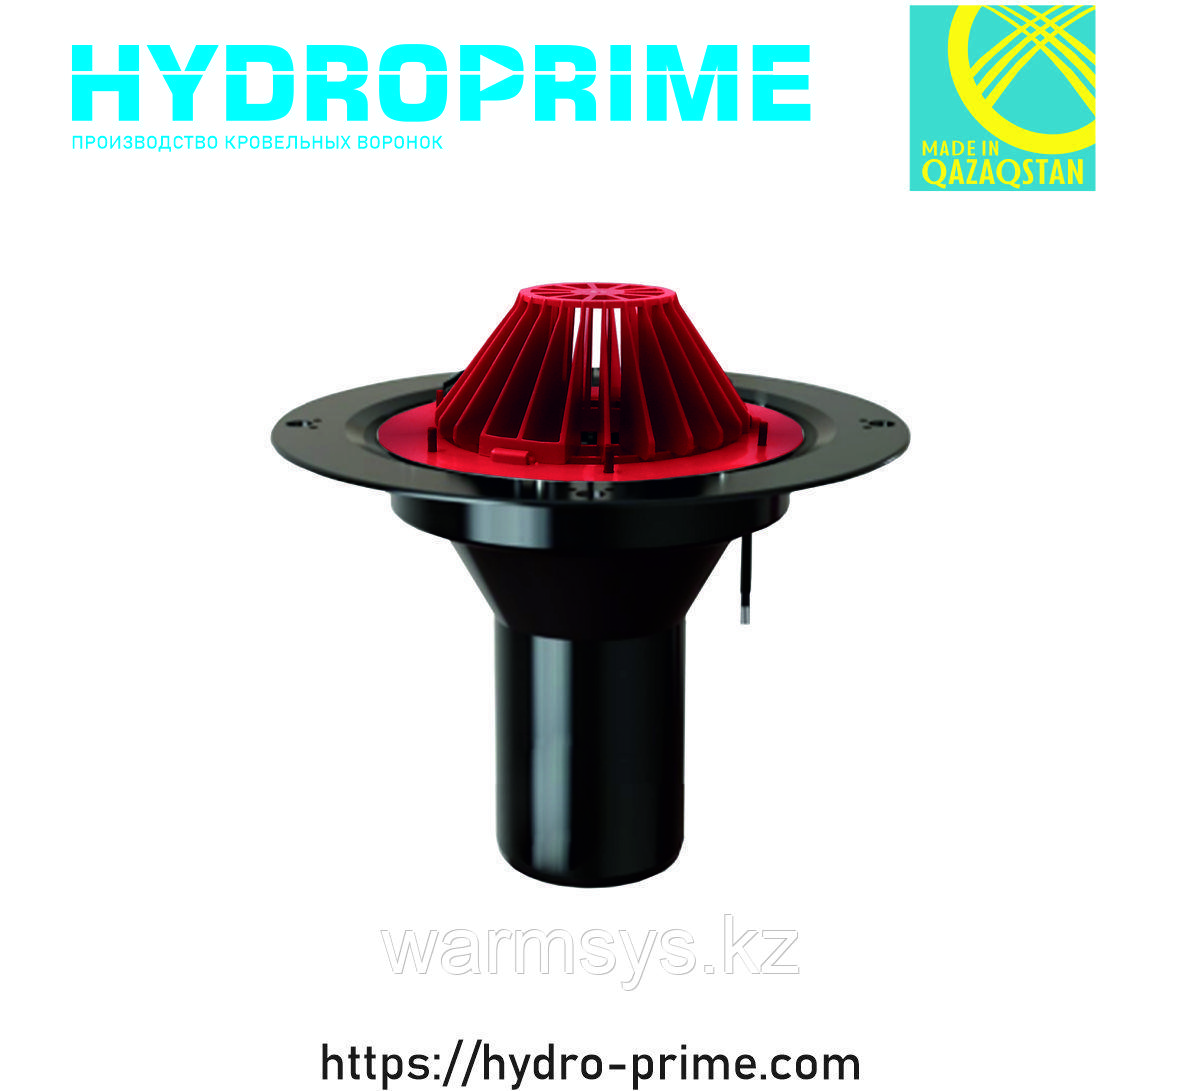 Кровельная воронка HydroPrime HPH 110x165 с электрообогревом